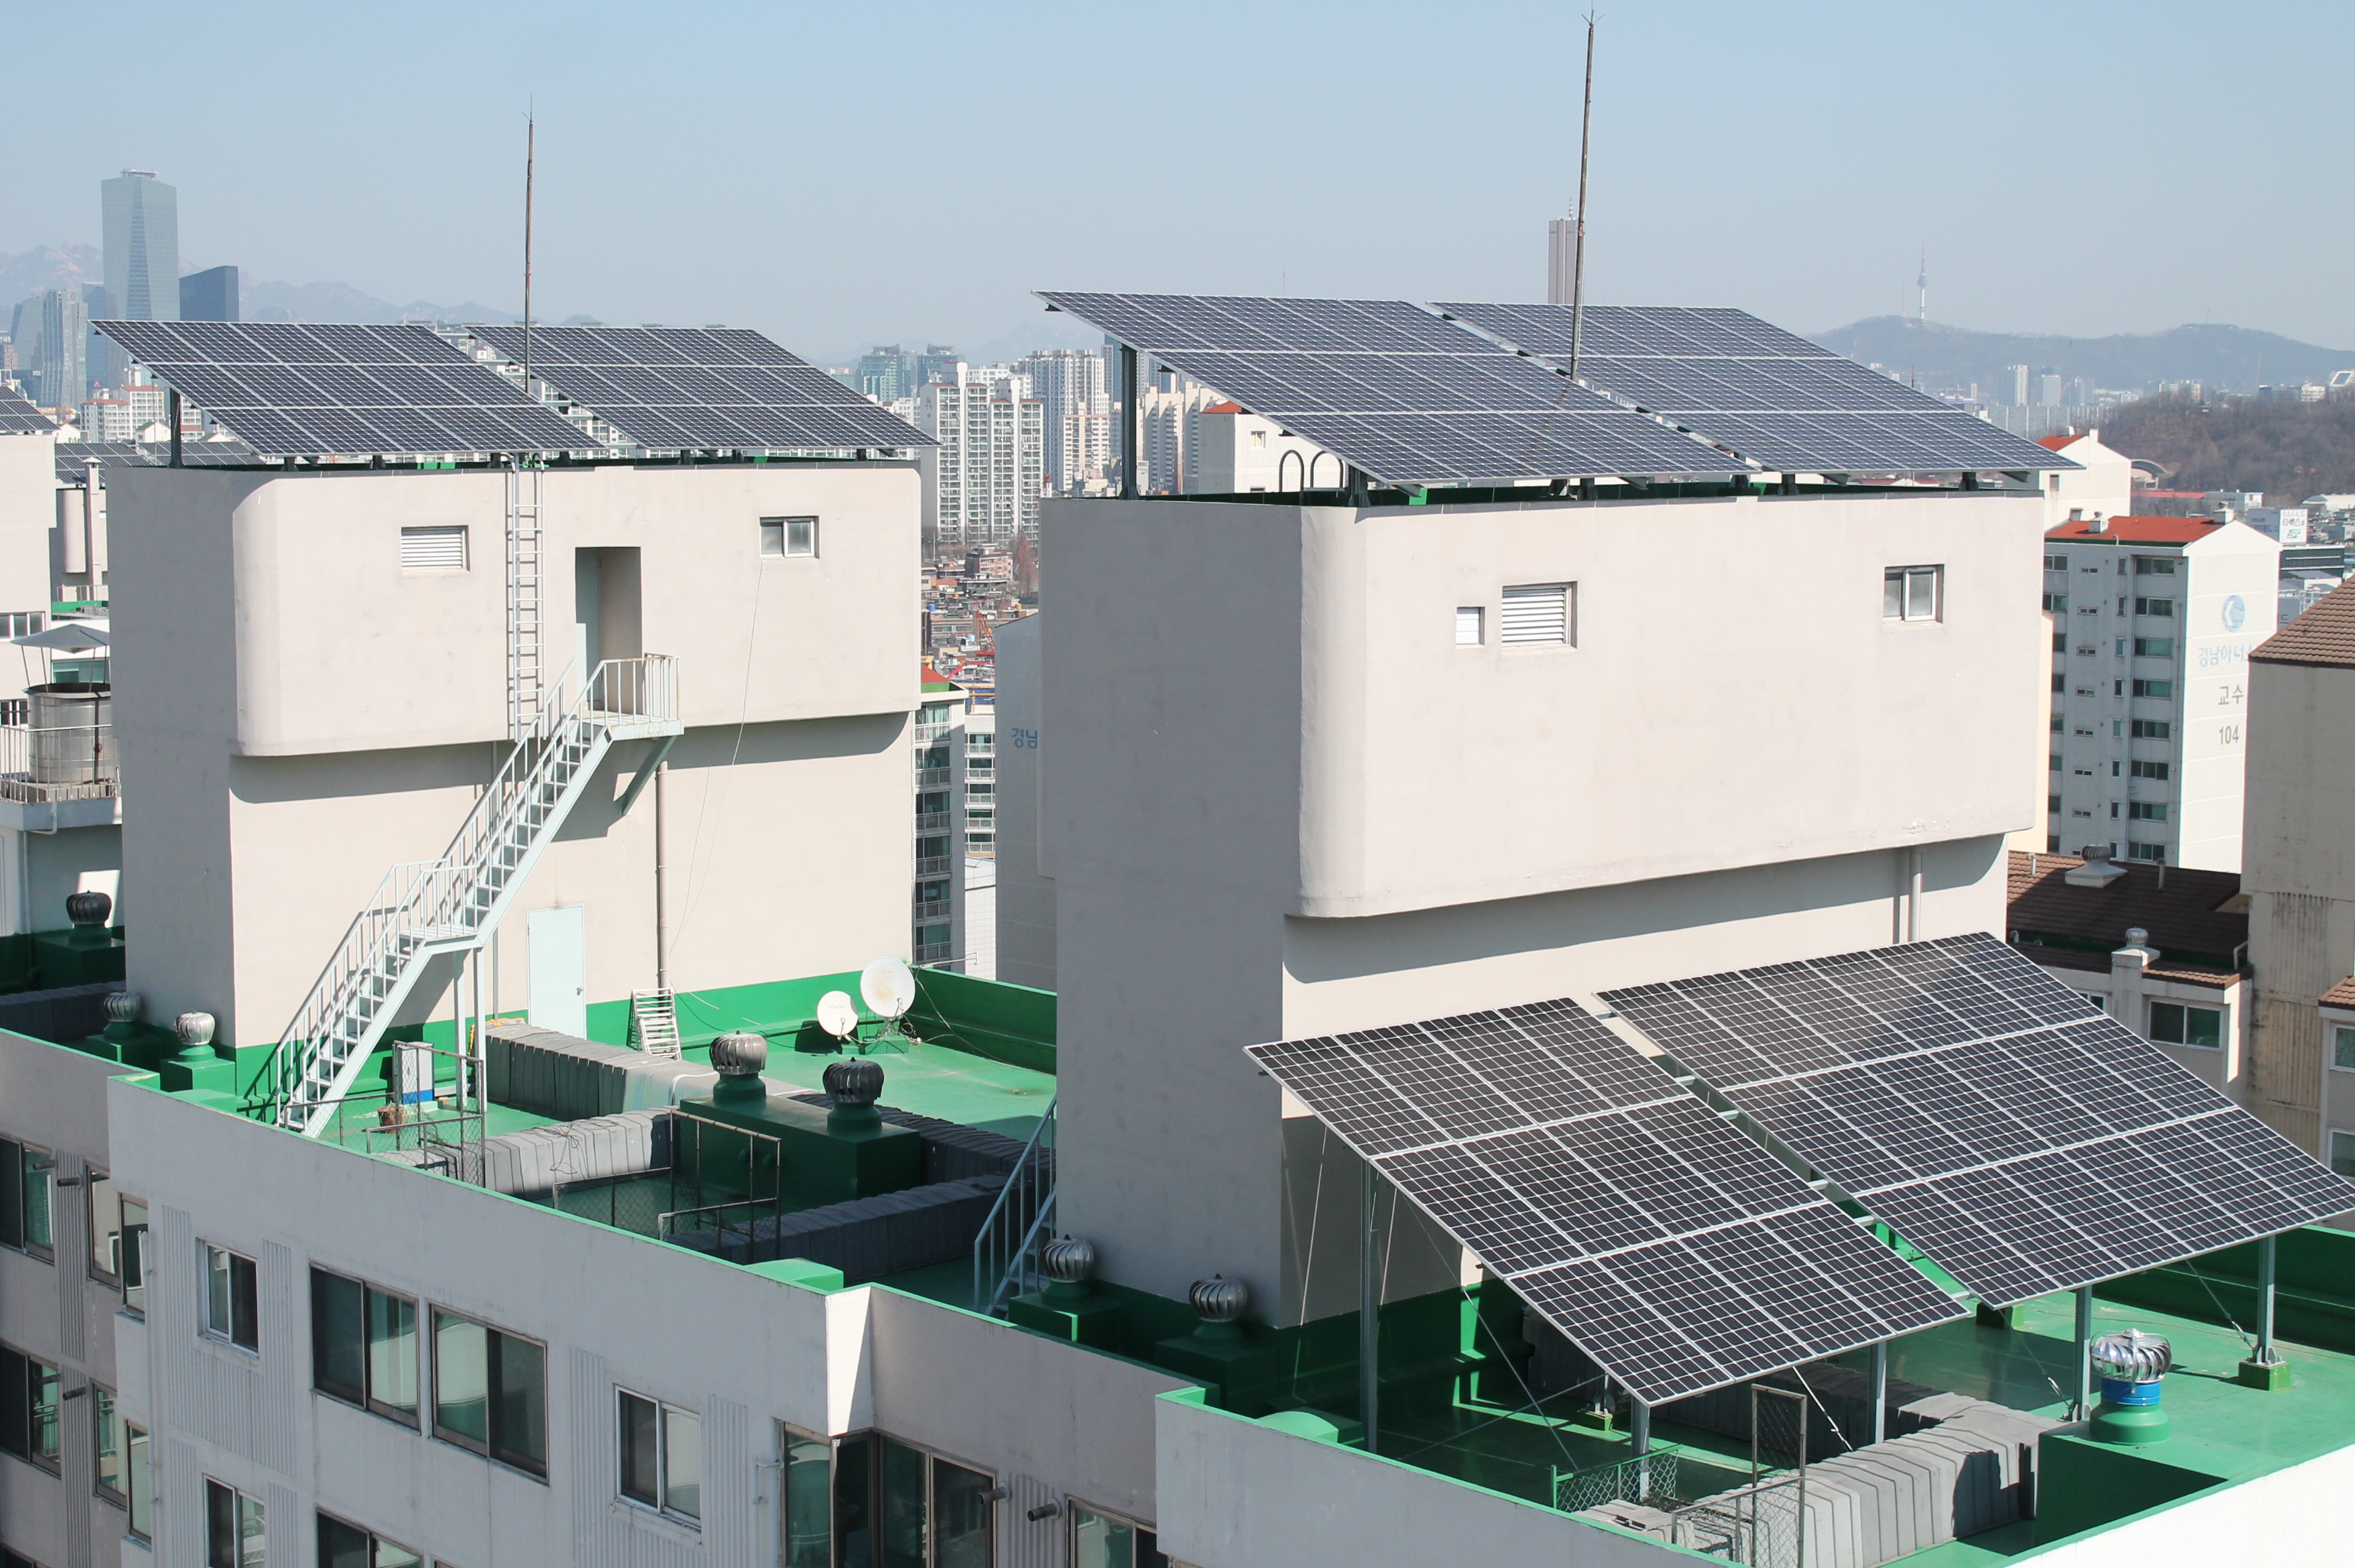 허씨가 사는 아파트는 국내 1호로 옥상 태양광을 임대 설치한 곳이다. 103kW급 태양광 집결판에서 6개월 동안 7만 6,179kWh의 전기가 생산됐다. 금액으로 환산하면 1743만원 정도다.